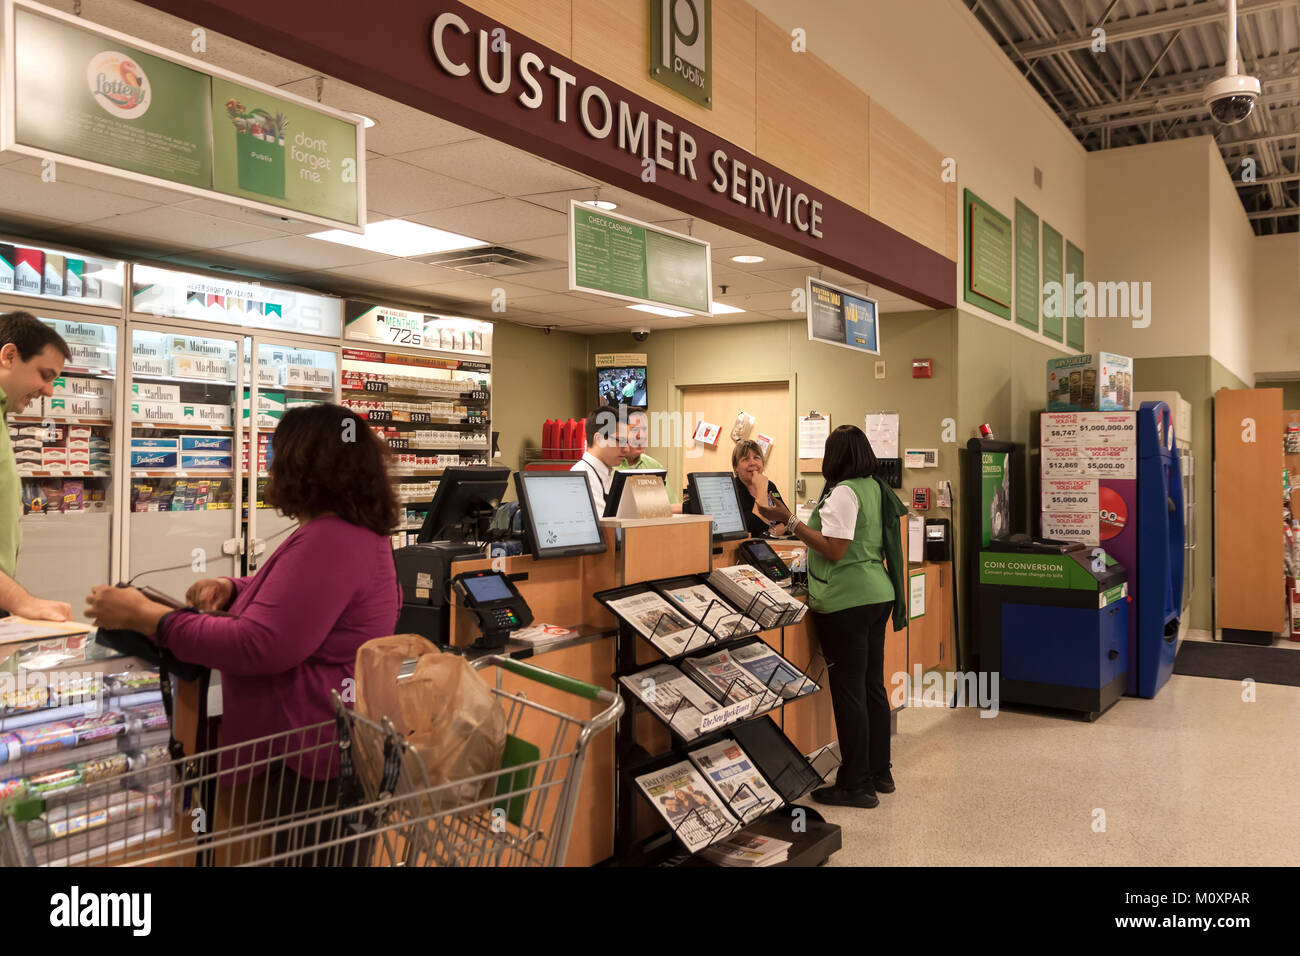 Customer Service Desk, die Renditen und Beschwerden in einer Publix Supermarkt in Florida, Vereinigte Staaten von Amerika. Stockfoto